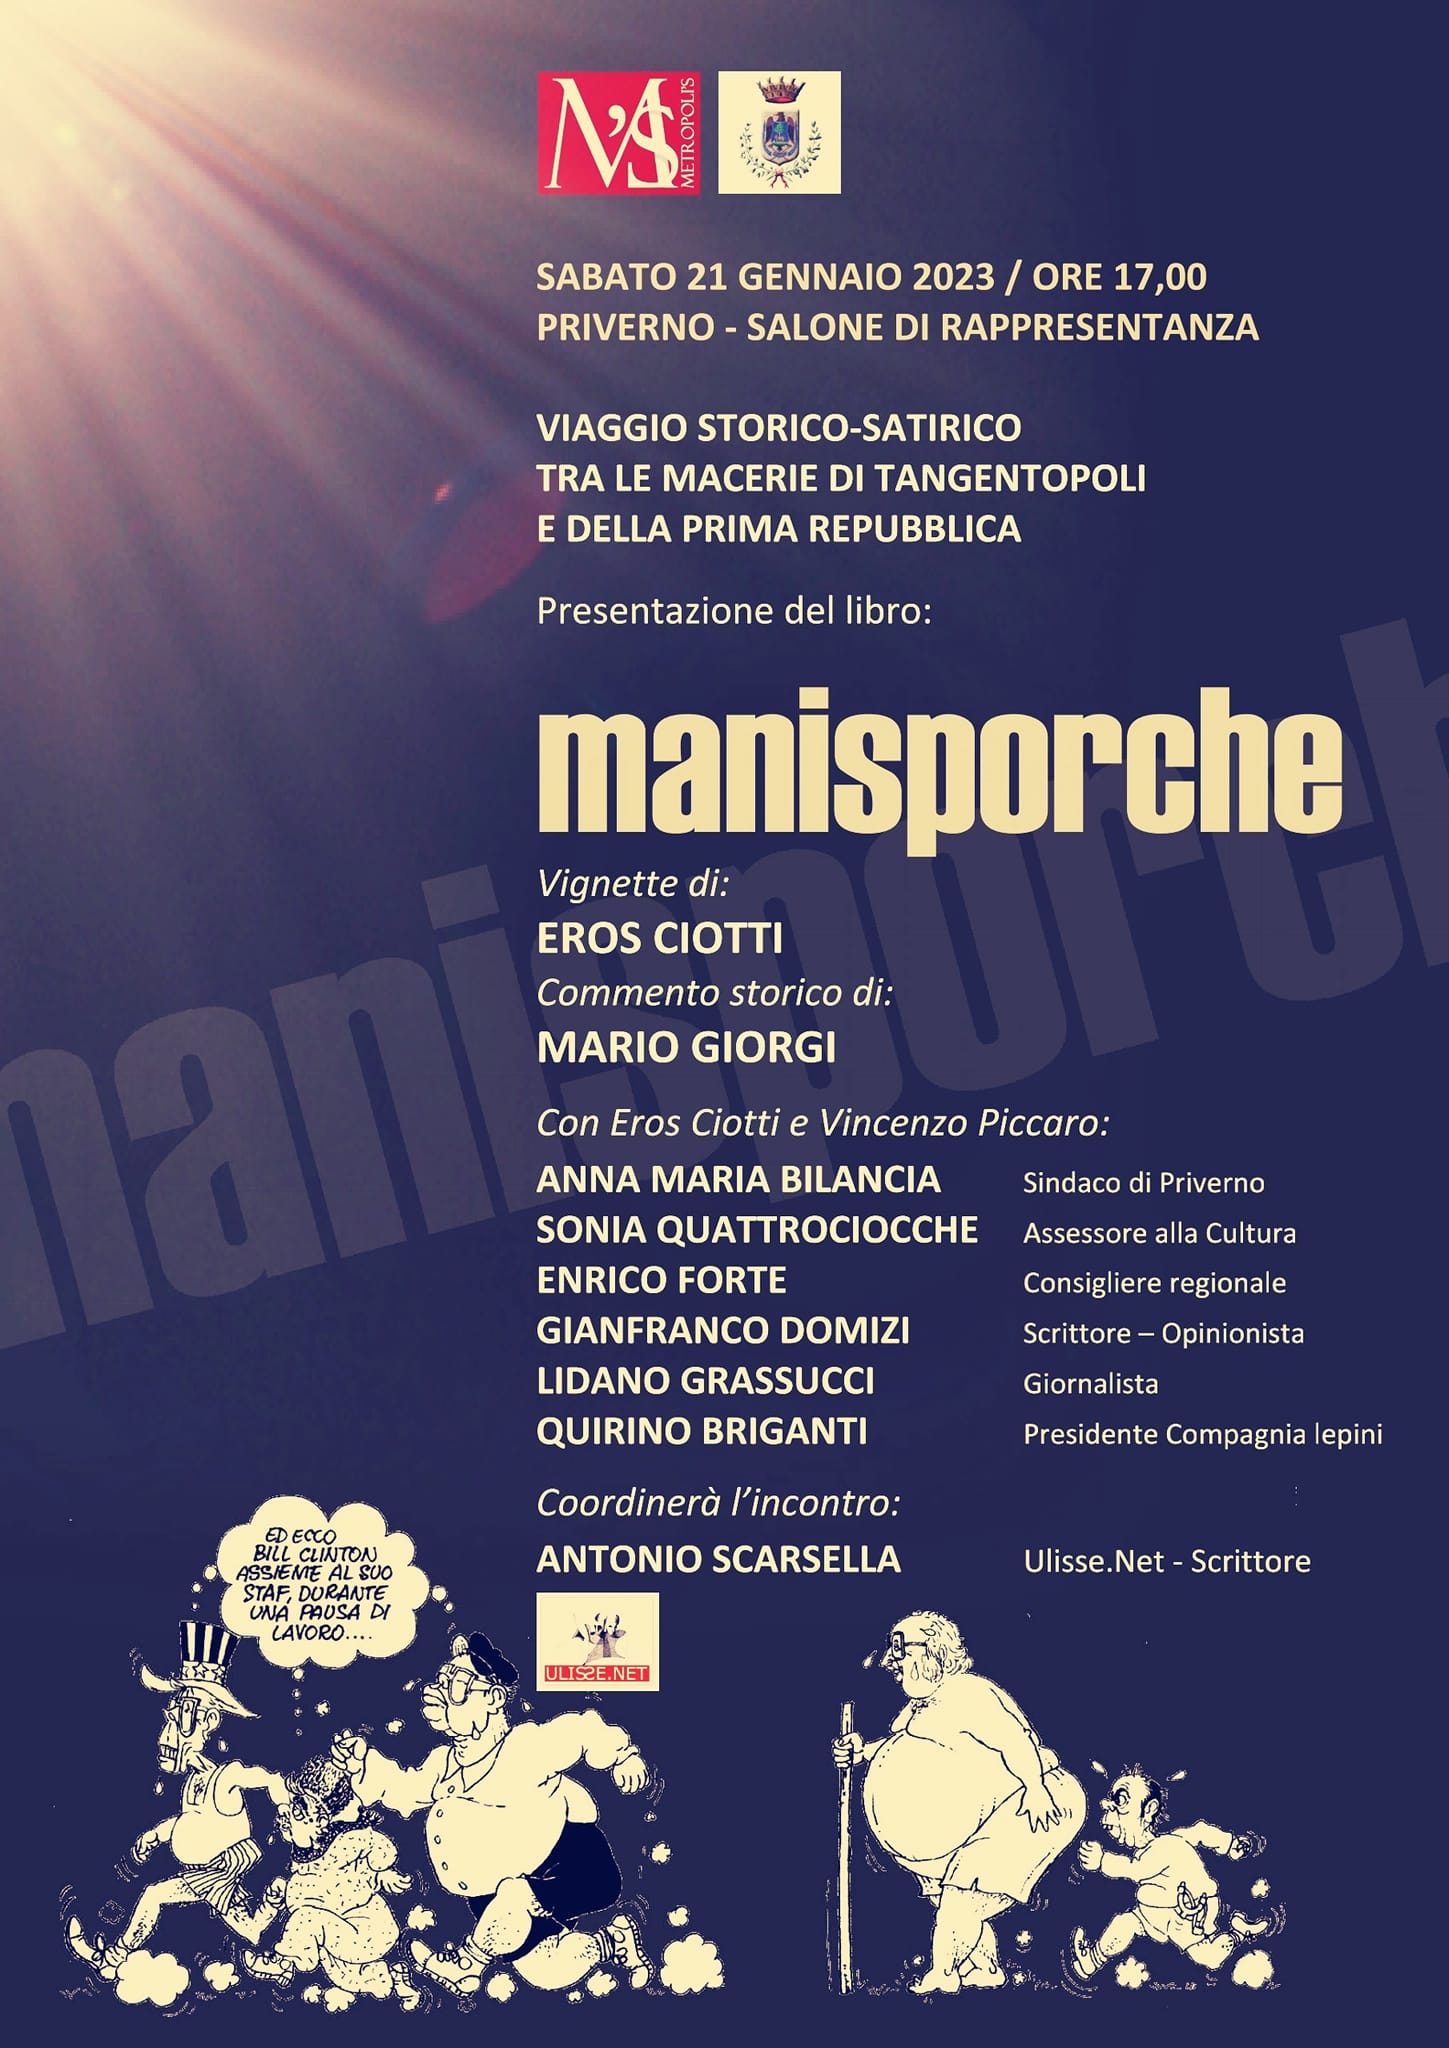 Priverno: Manisporche - memory book @ Priverno